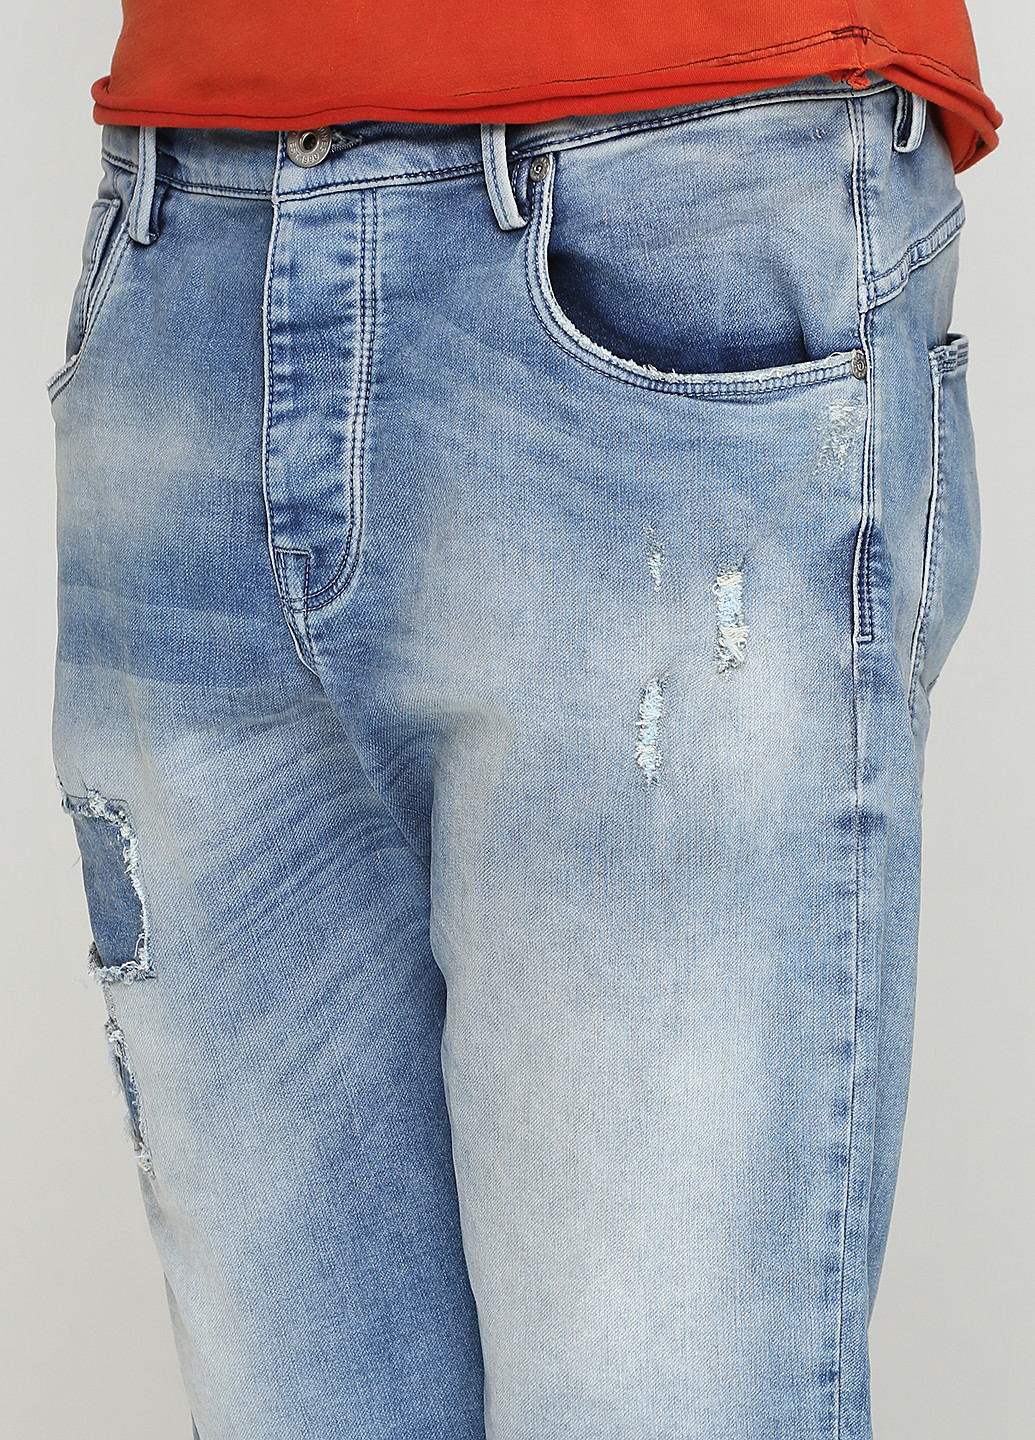 Шорты Jack & Jones средняя талия однотонные голубые джинсовые